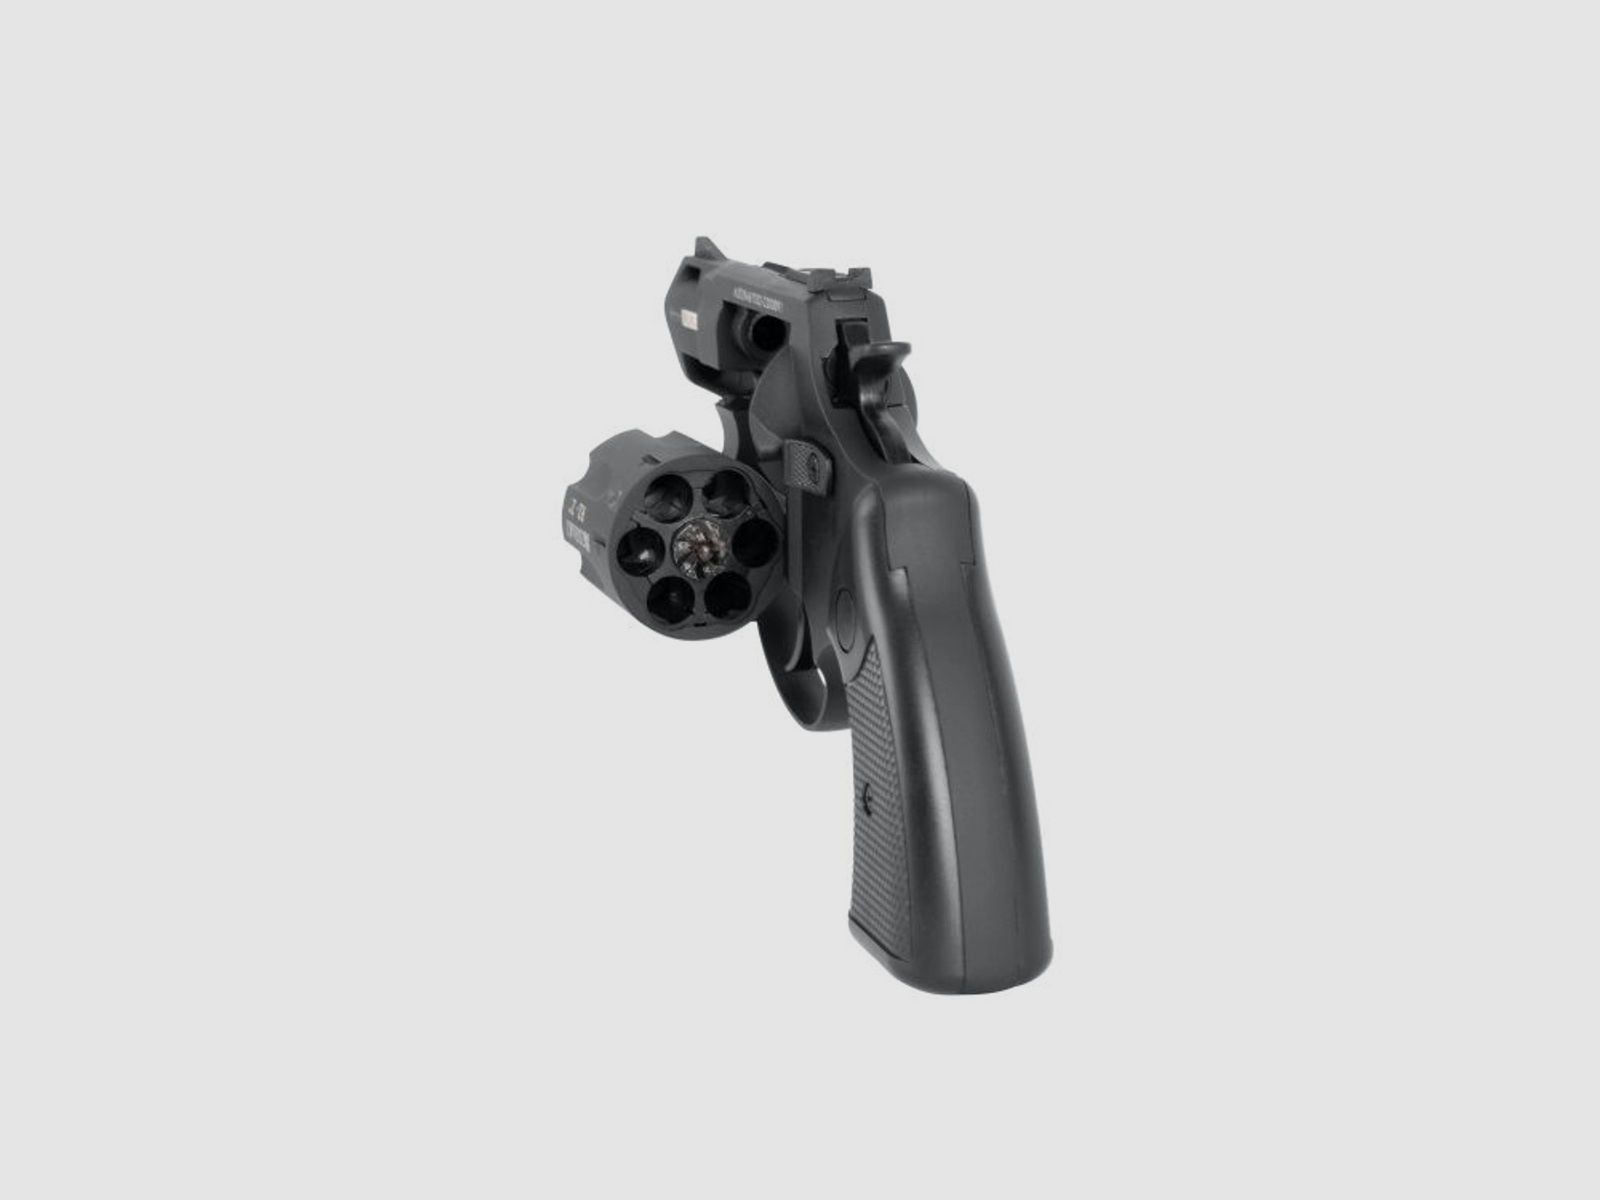 Zoraki	 R2 2" Schreckschuss Revolver 9mm R. - Gas Signal